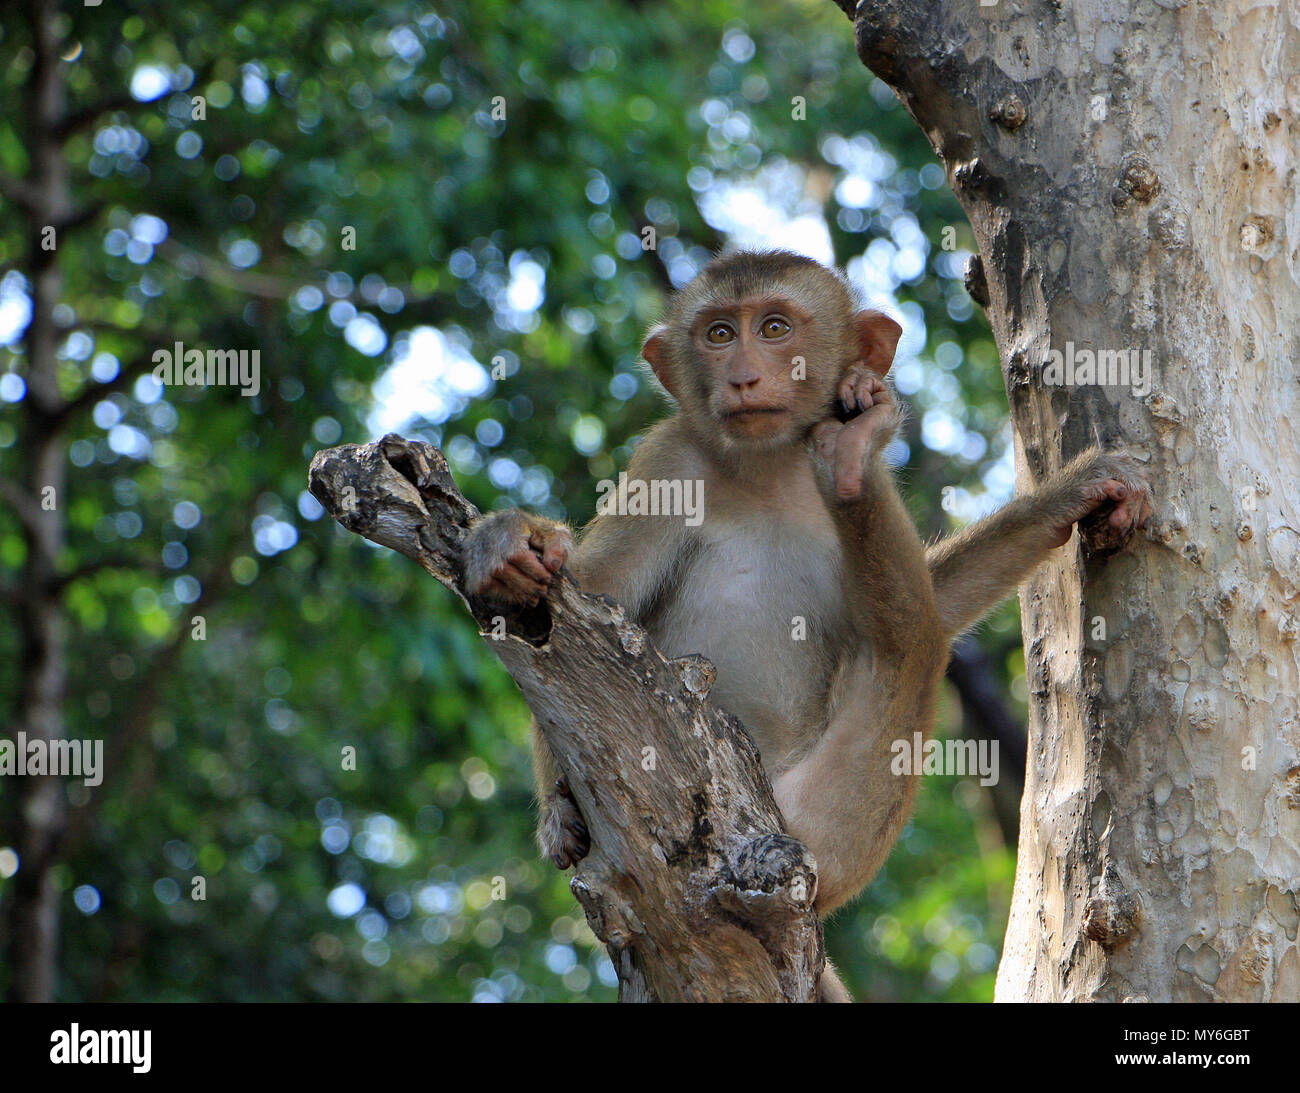 Un bambino monkey giocando in una struttura ad albero che poggia il capo sul suo piede. Egli ha una espressione pensosa. Foto Stock